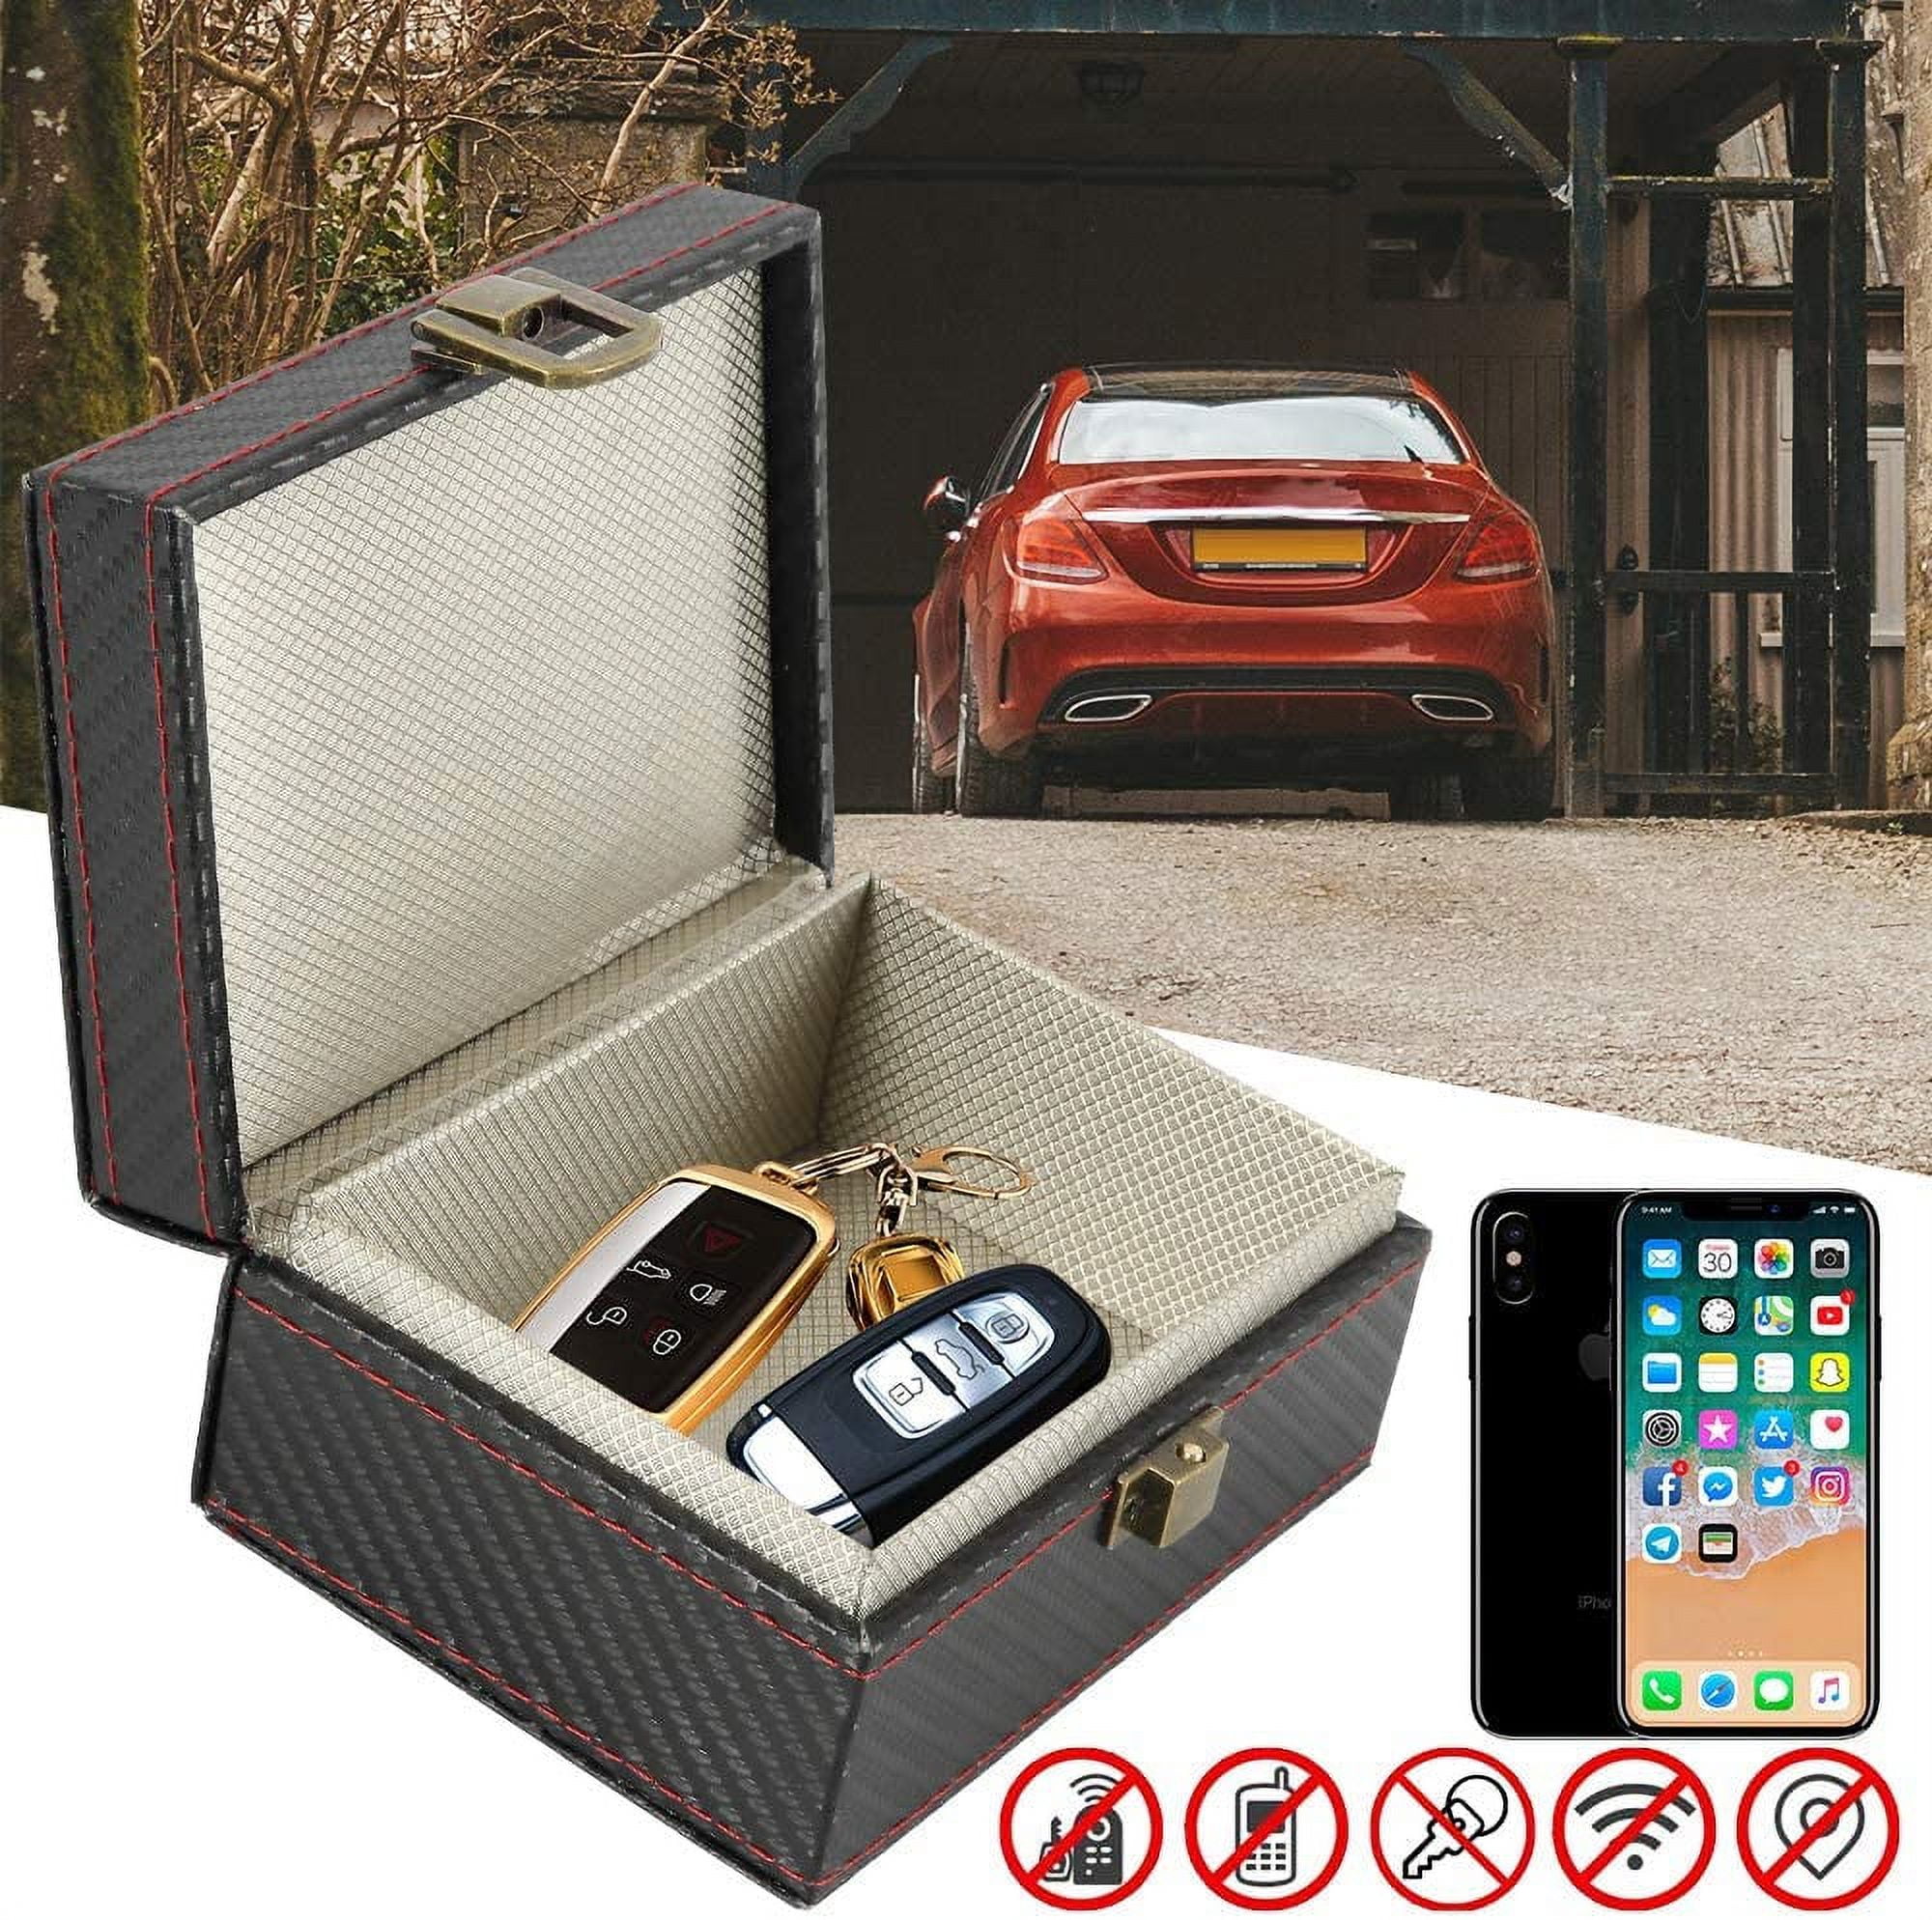 Faraday Box For Car Keys, Signal Blocking Technology